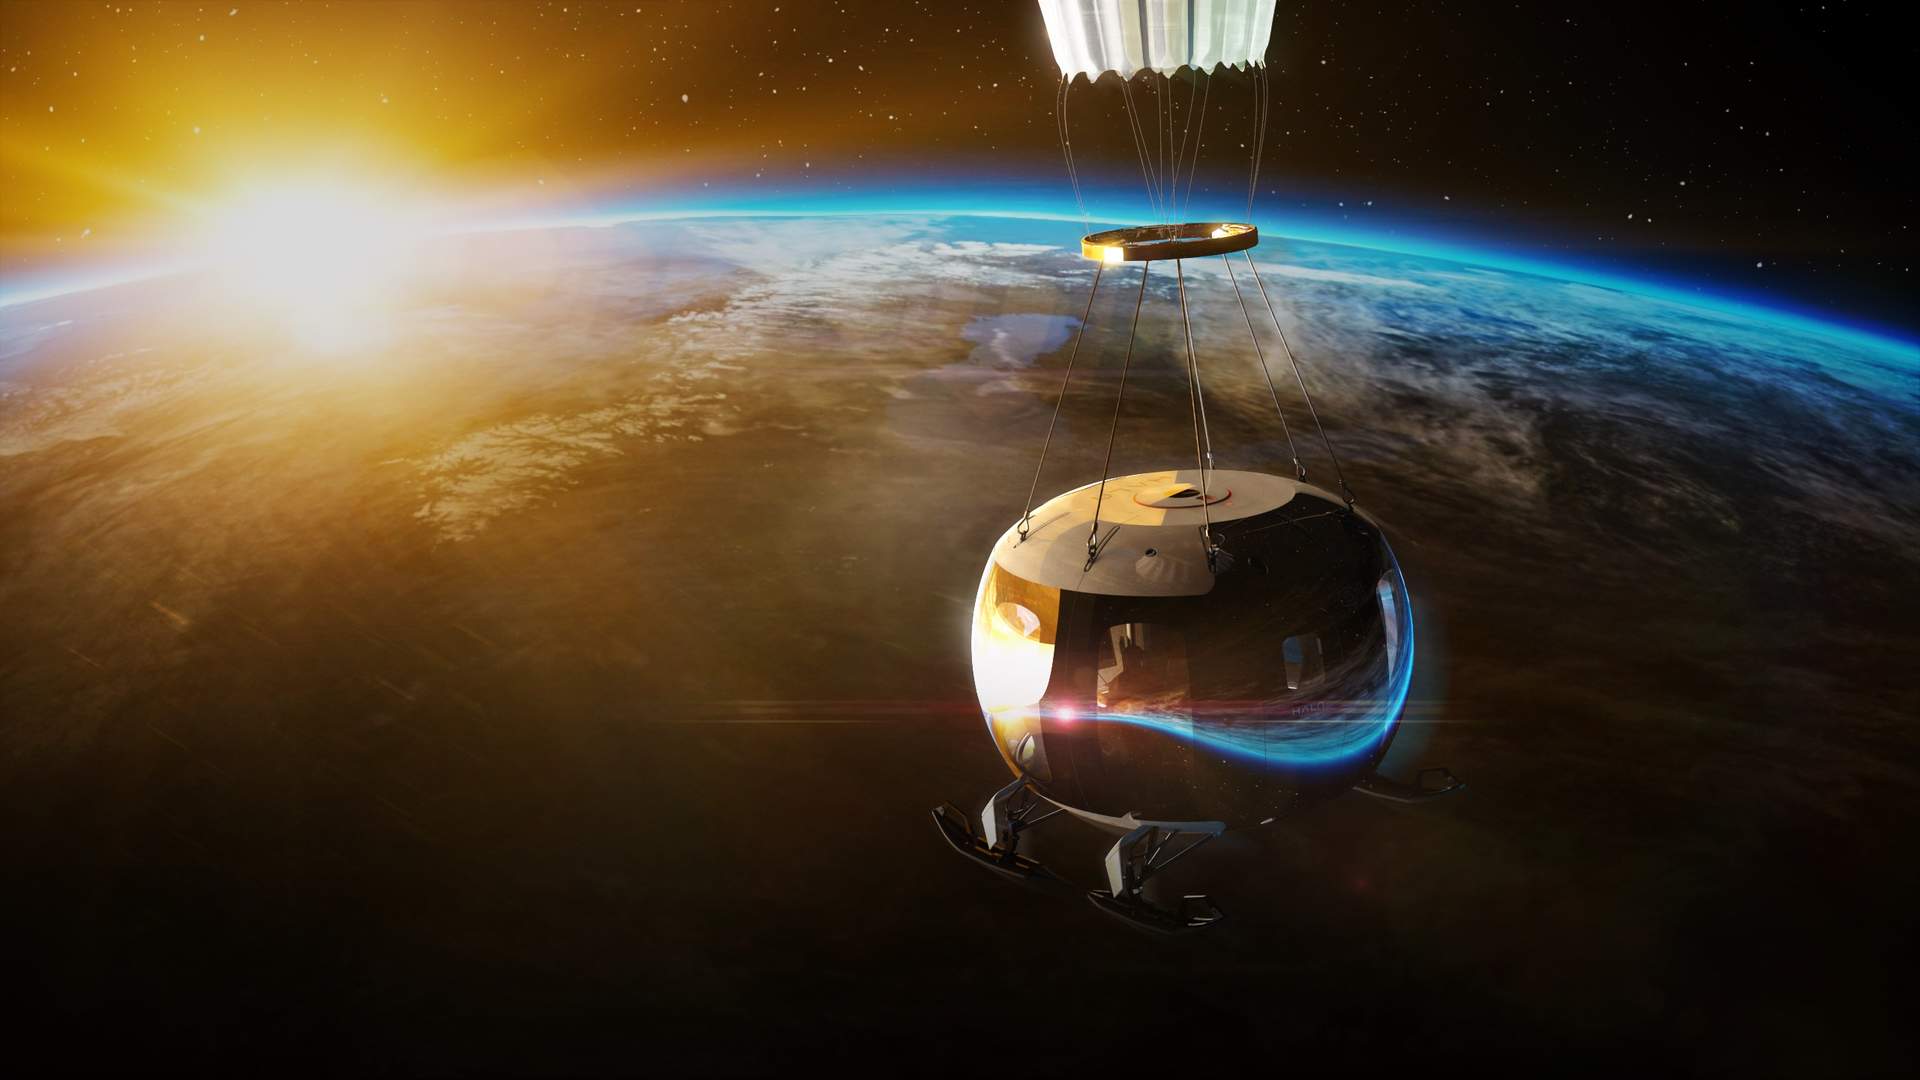 Halo Space completa el montaje de su cápsula prototipo para el primer vuelo de prueba de turismo espacial